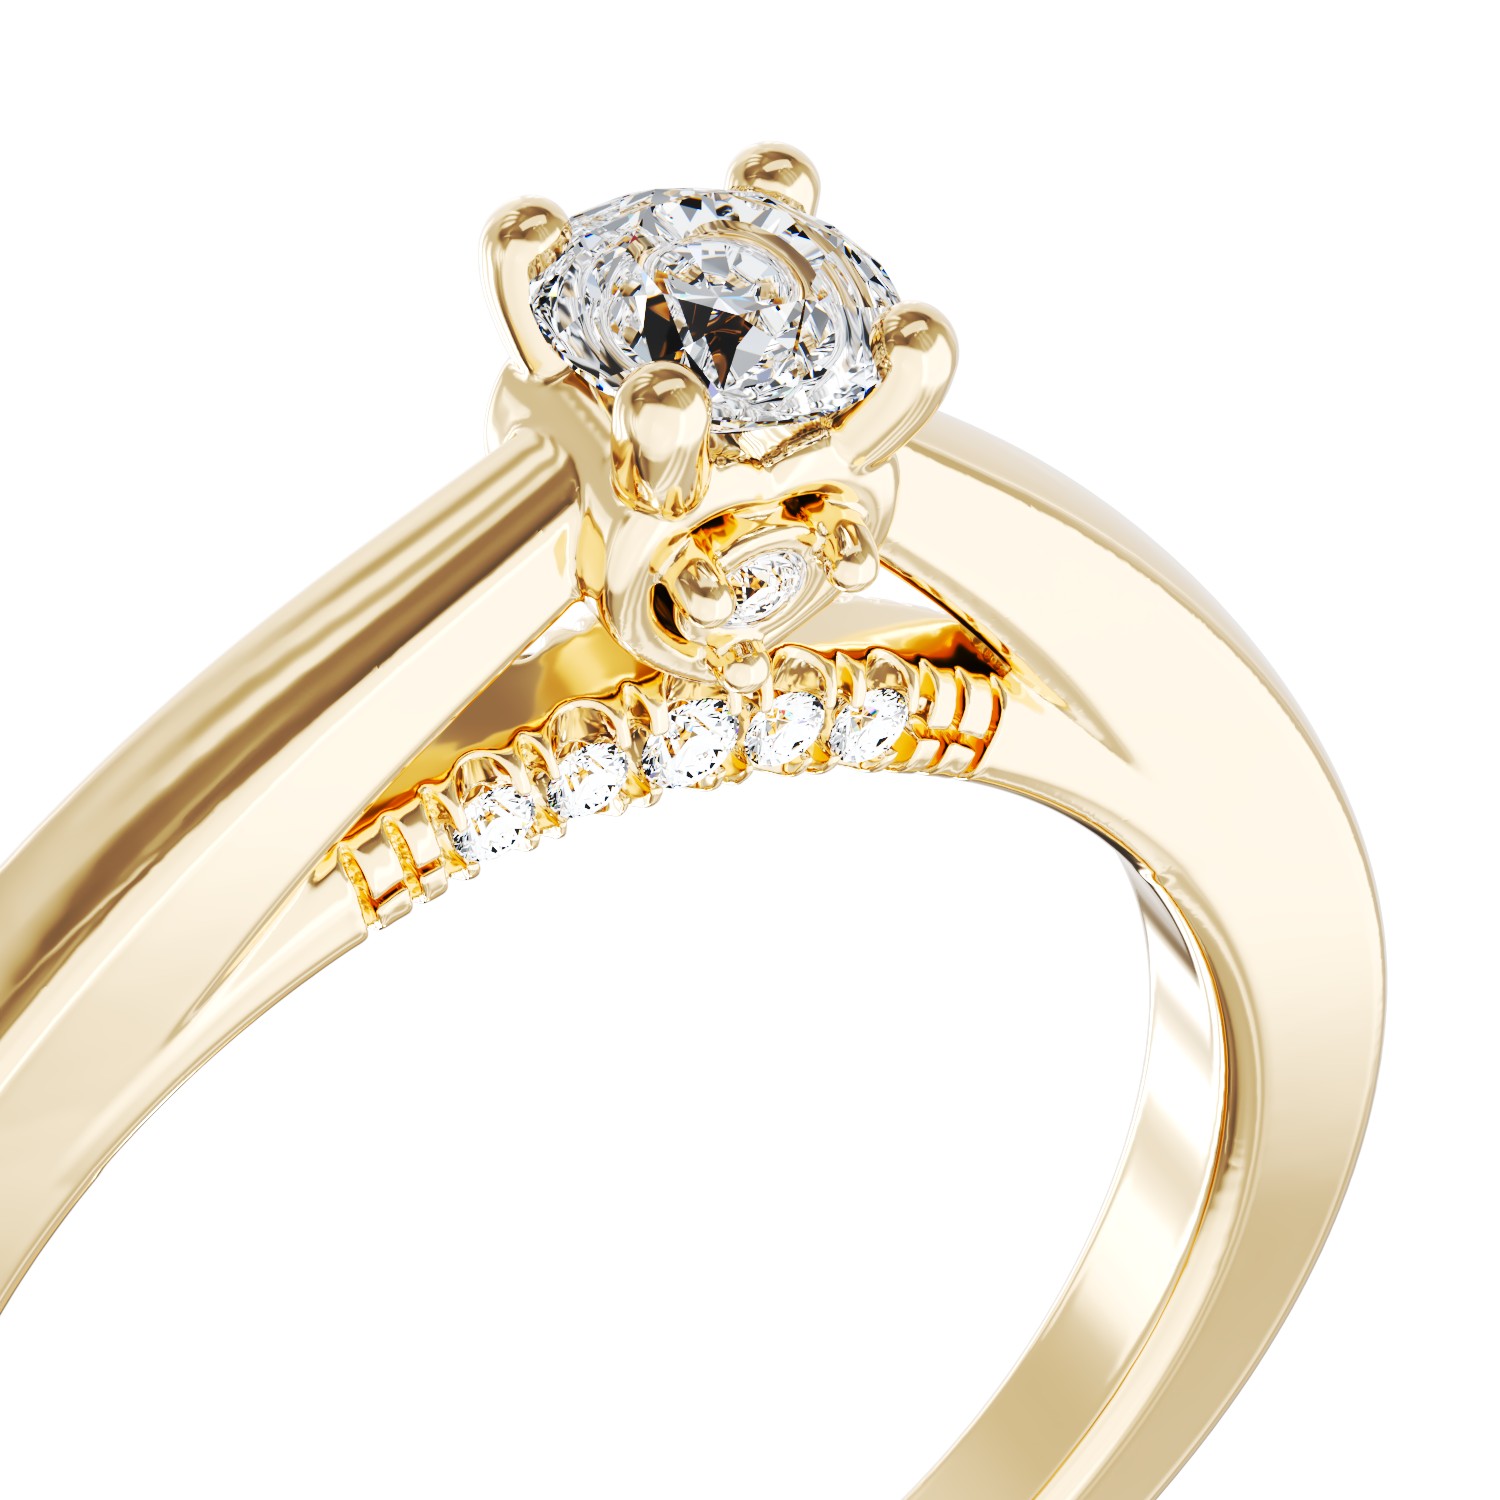 Eljegyzési gyűrű 18K-os sárga aranyból 0,2ct gyémánttal és 0,04ct gyémántokkal. Gramm: 2,88